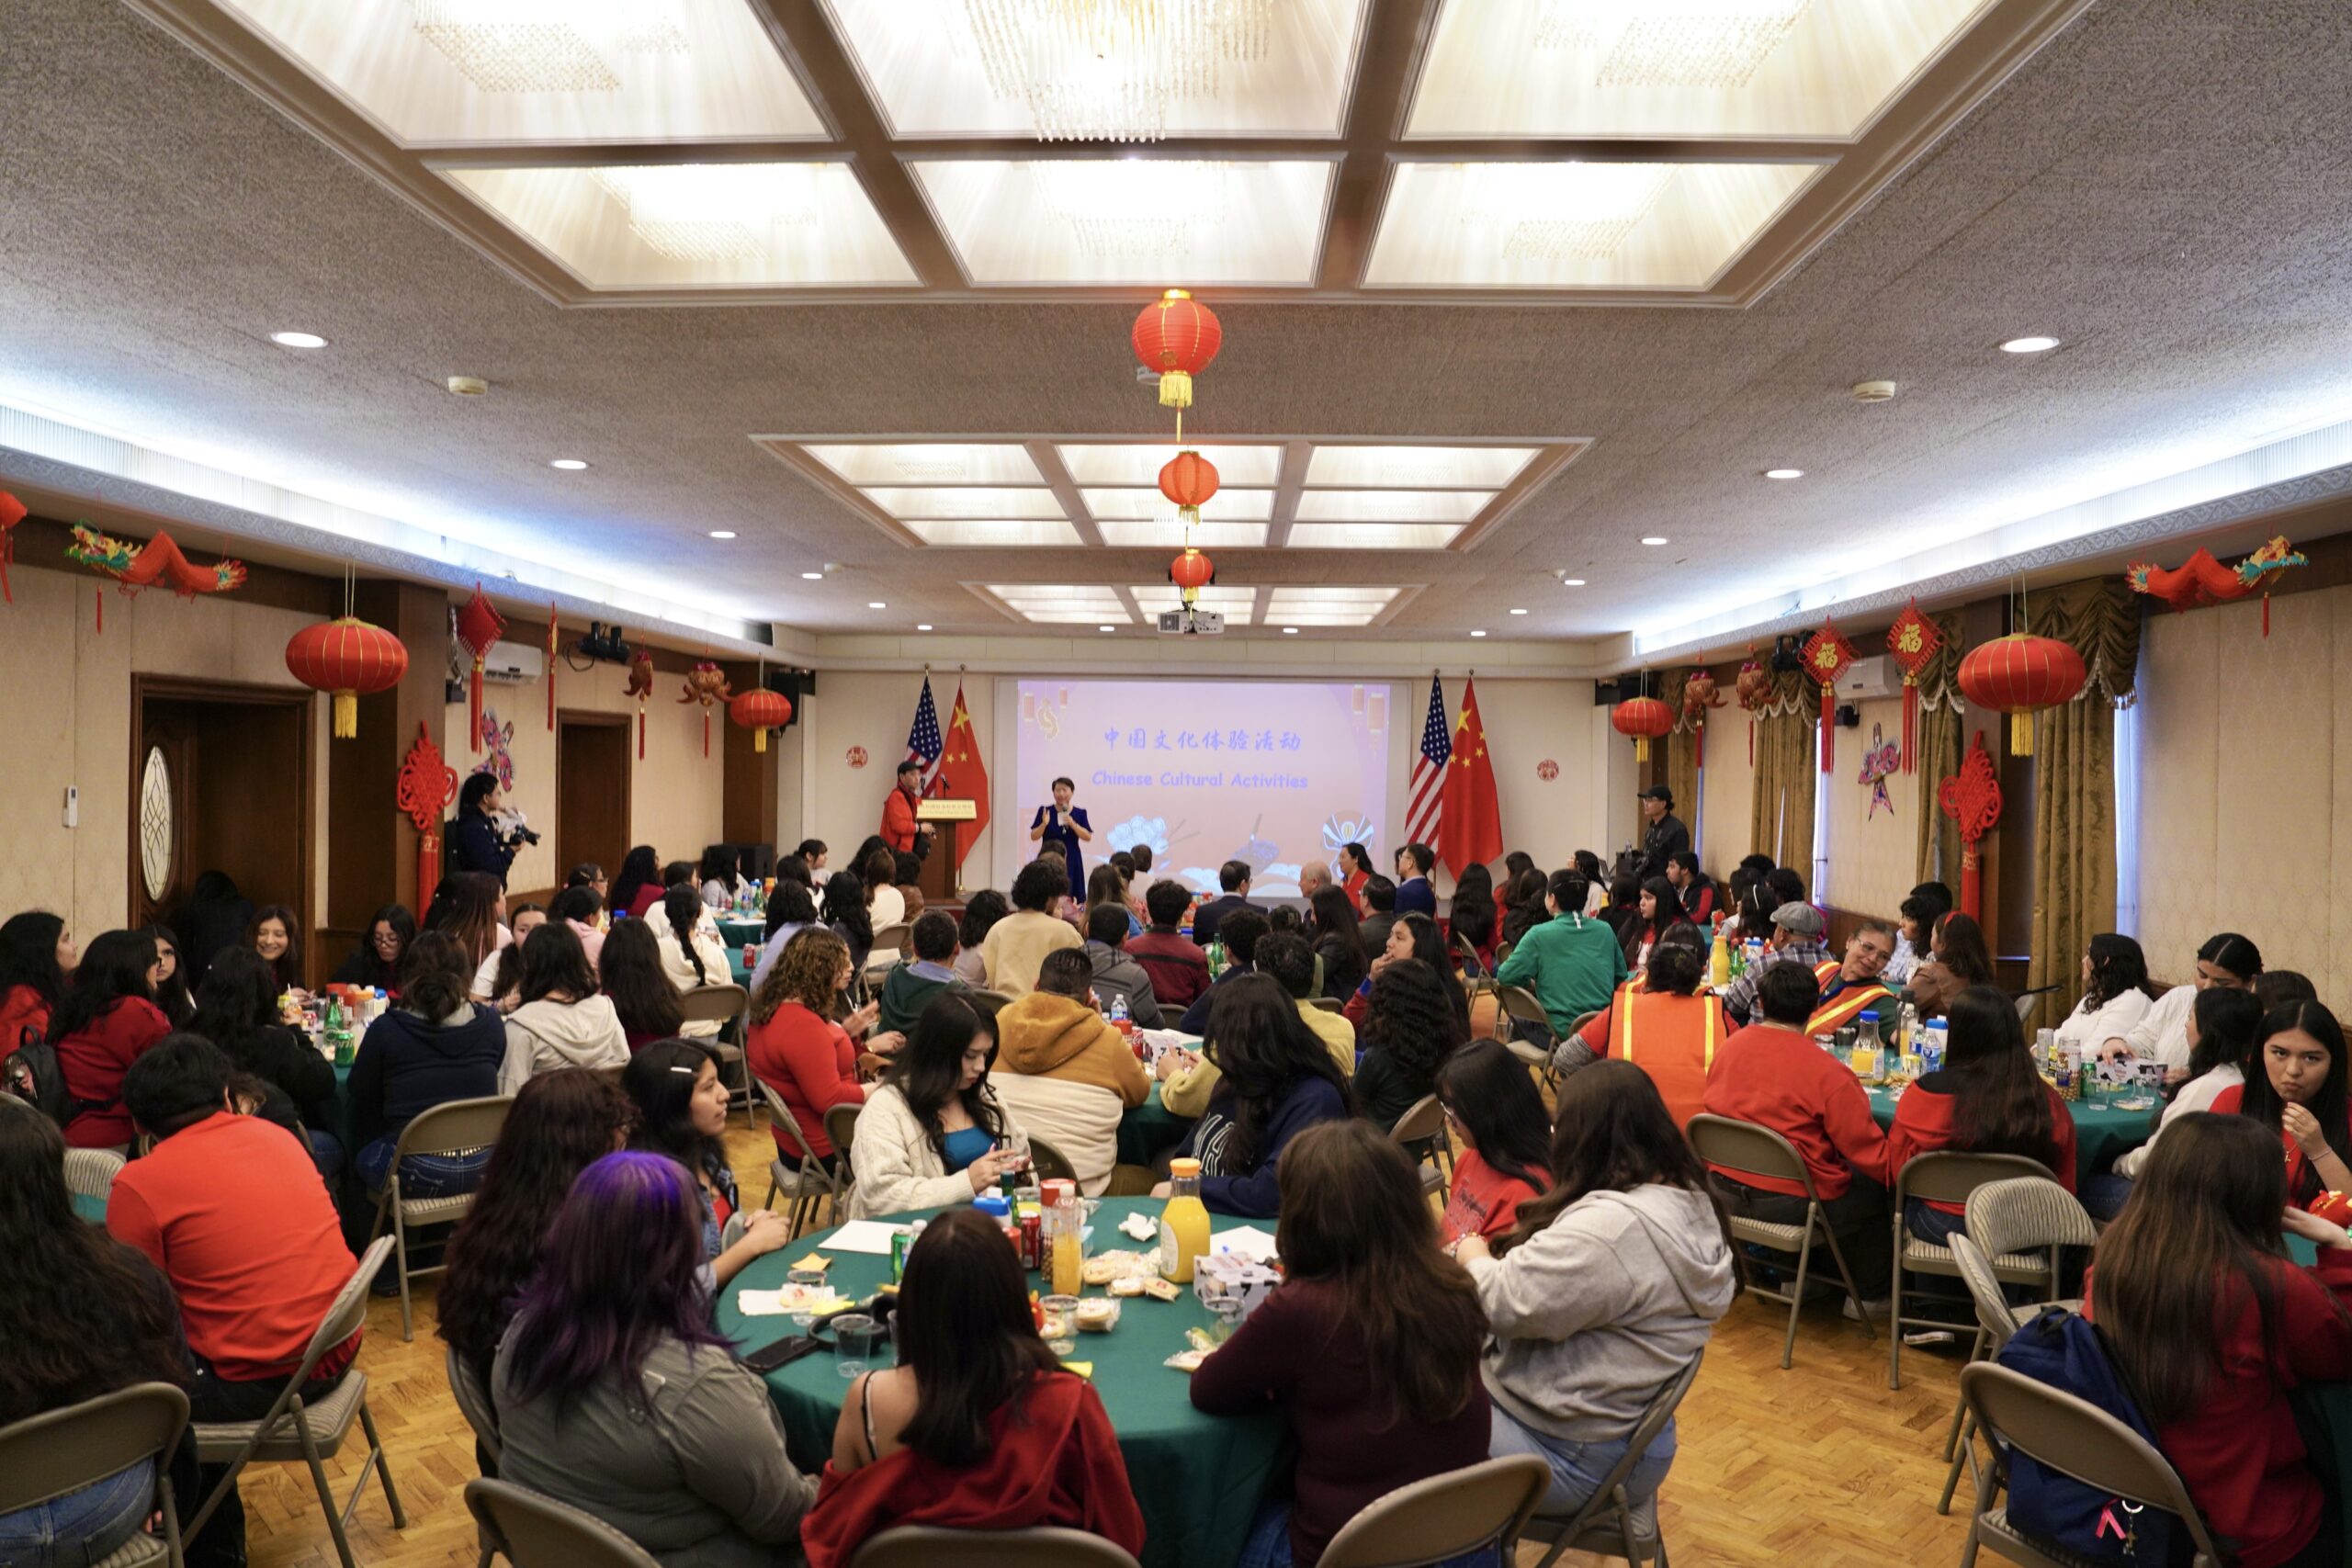 驻洛杉矶总领事馆举行感知中国 庆祝元宵节暨赴华交流欢送仪式